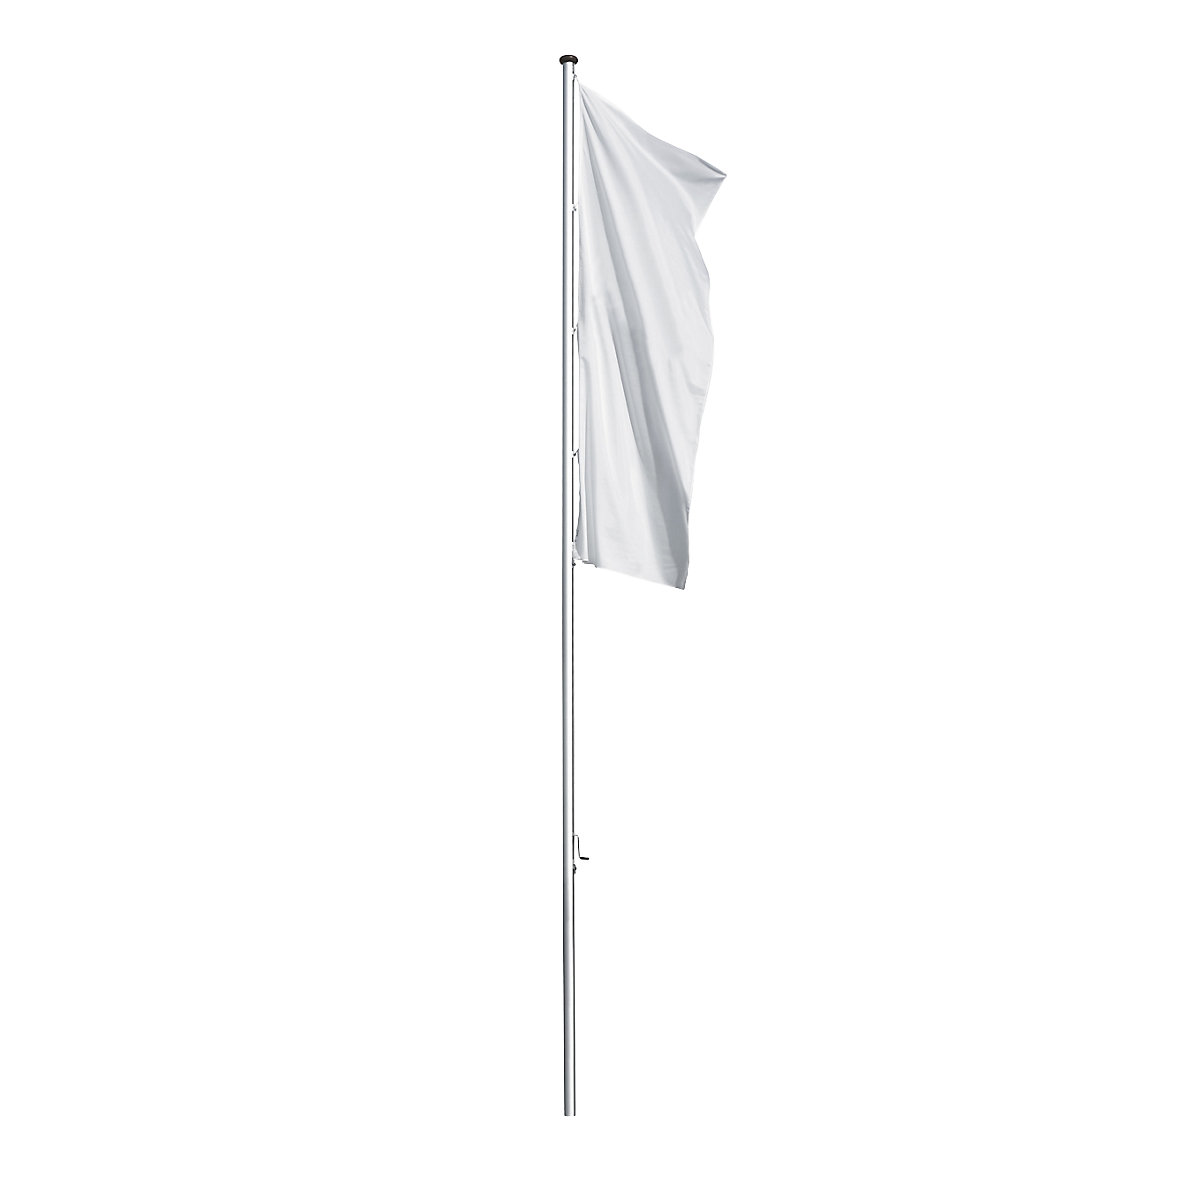 Mannus – Mastro de bandeira em alumínio PRESTIGE, sem braço, altura acima do solo 6 m, Ø 75 mm